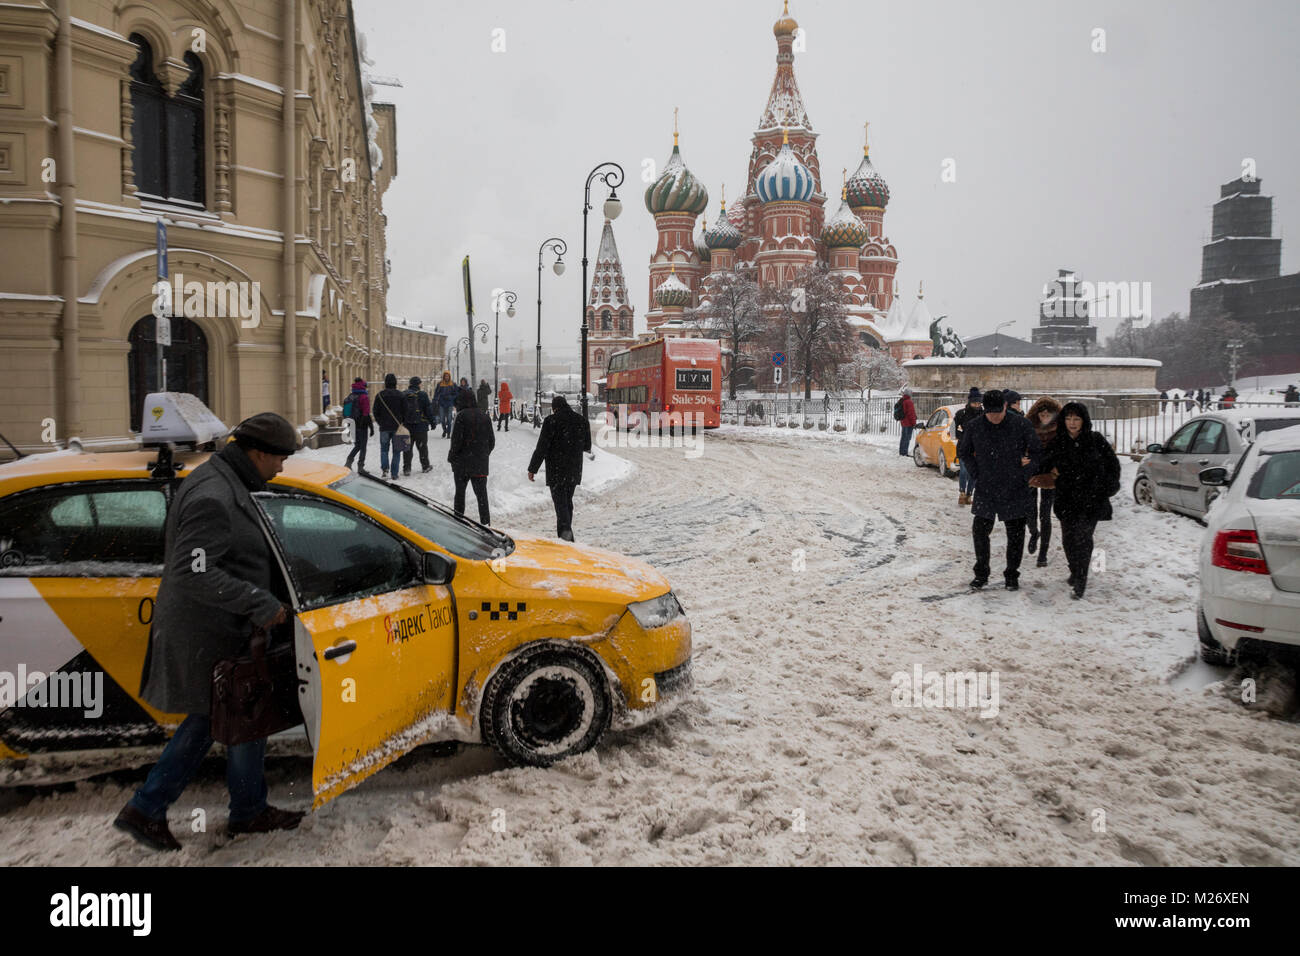 Un touriste se trouve dans une ville en taxi jaune Ilyinka Street dans le centre de Moscou, Russie Banque D'Images